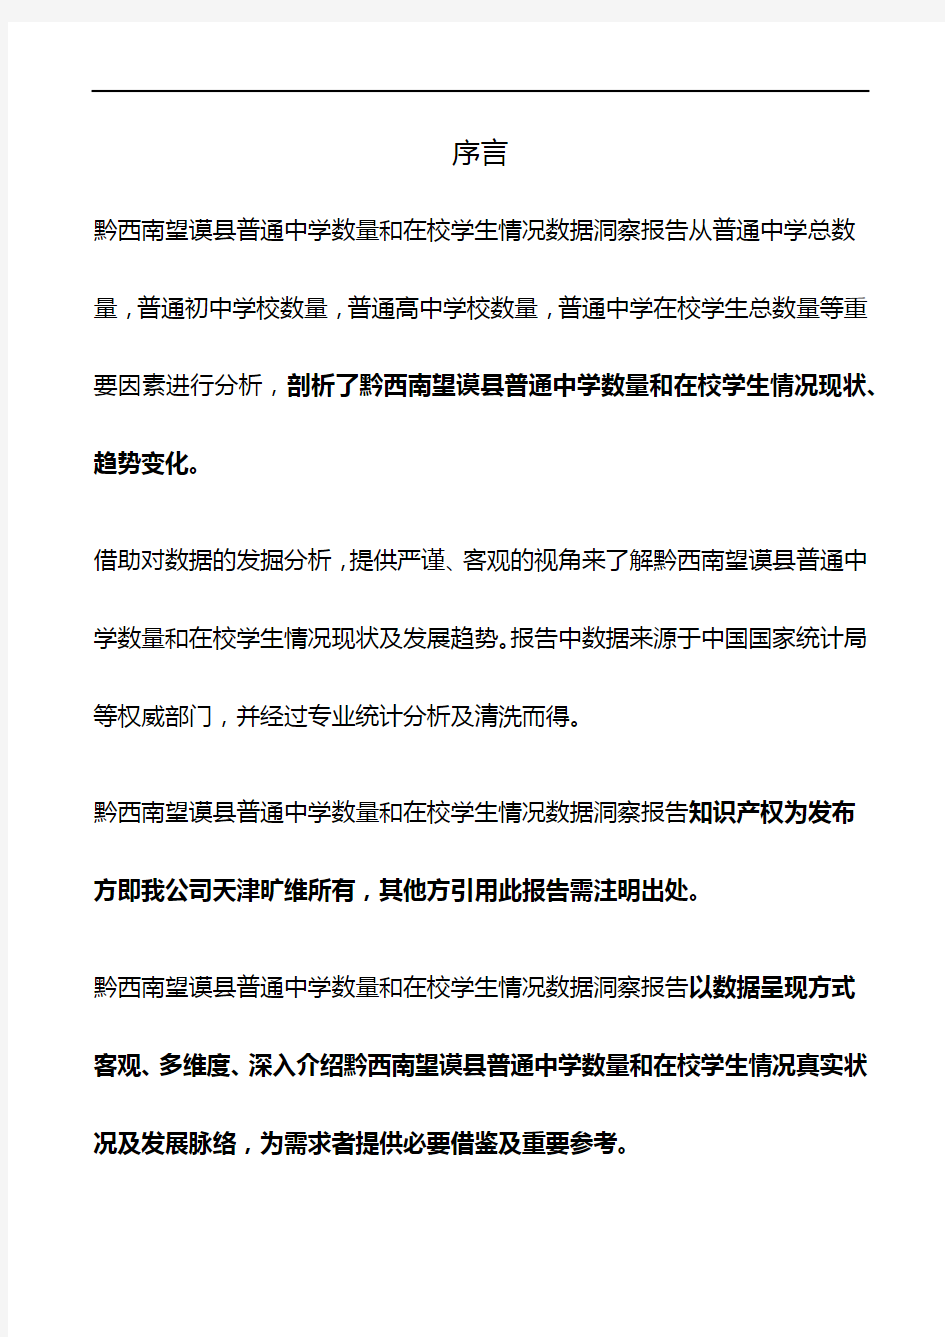 贵州省黔西南望谟县普通中学数量和在校学生情况3年数据洞察报告2020版